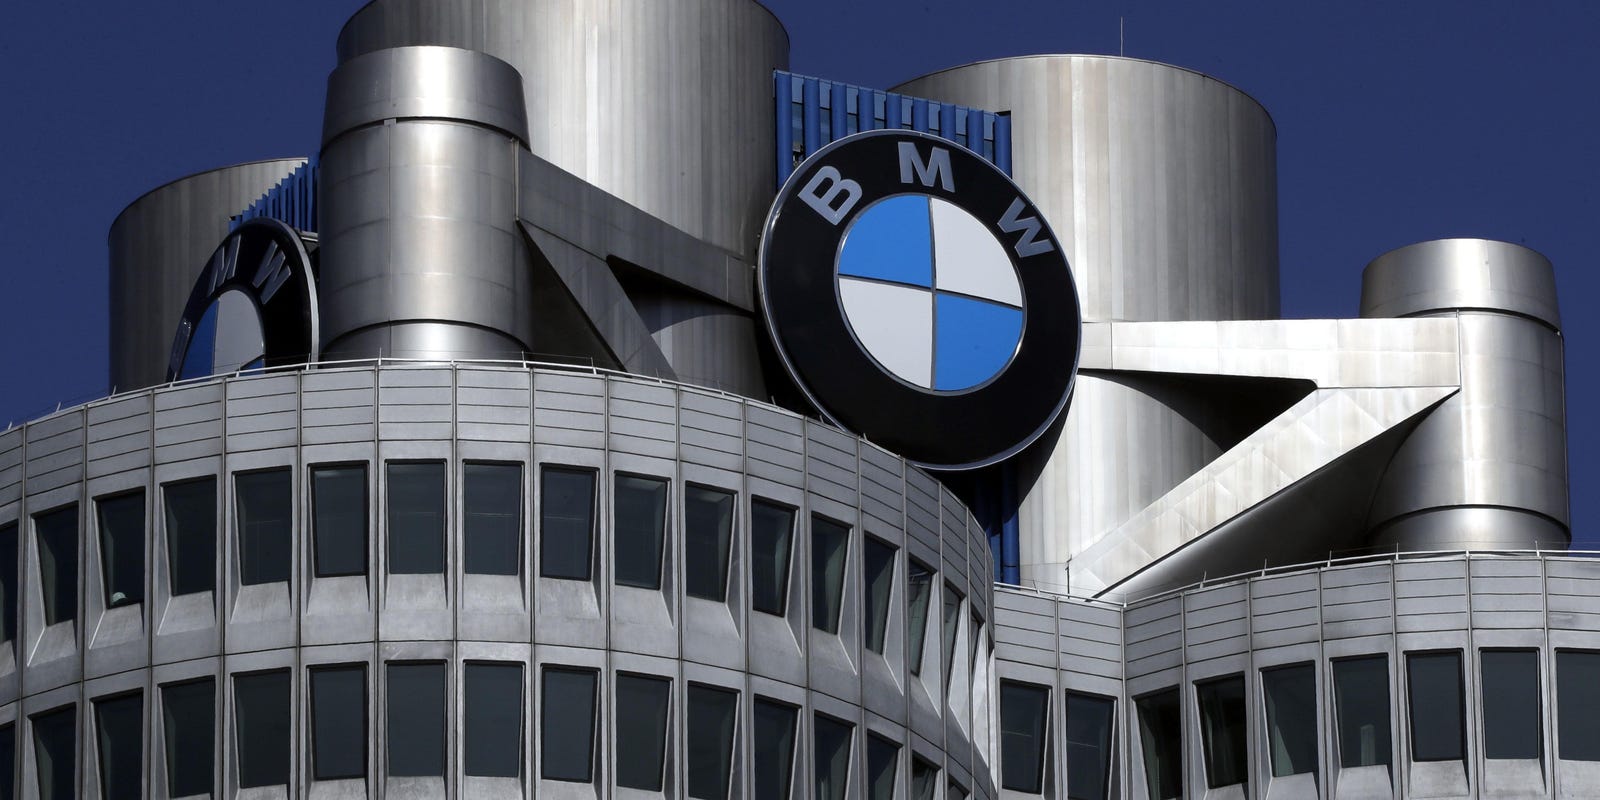 Nerazumljive dizajnerske poteze so odraz začetek “padca” BMW!